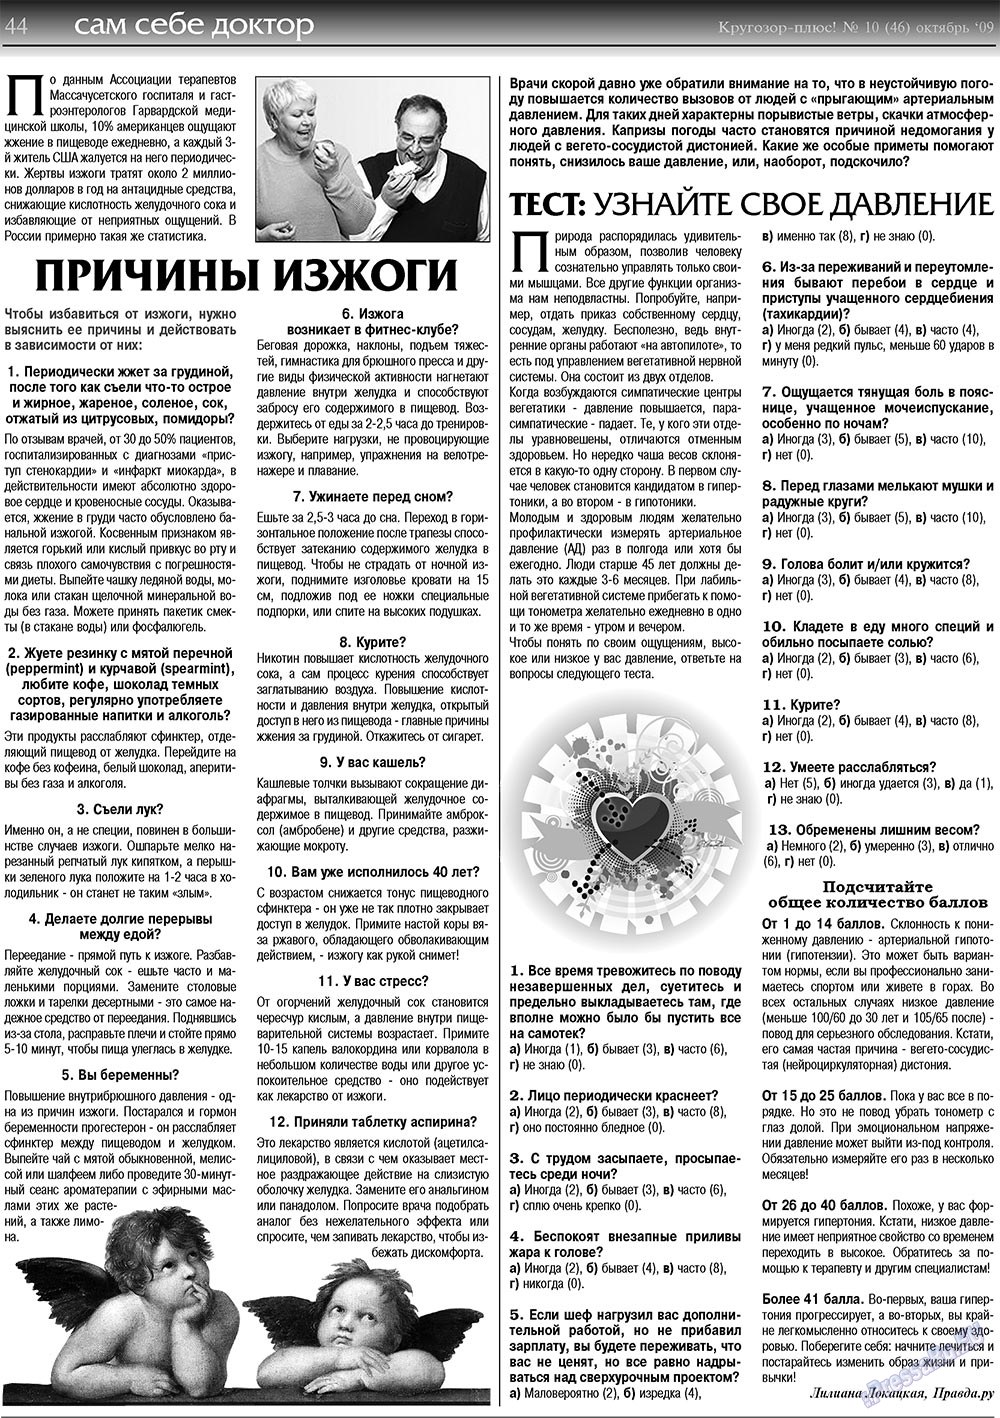 Кругозор плюс!, газета. 2009 №10 стр.44